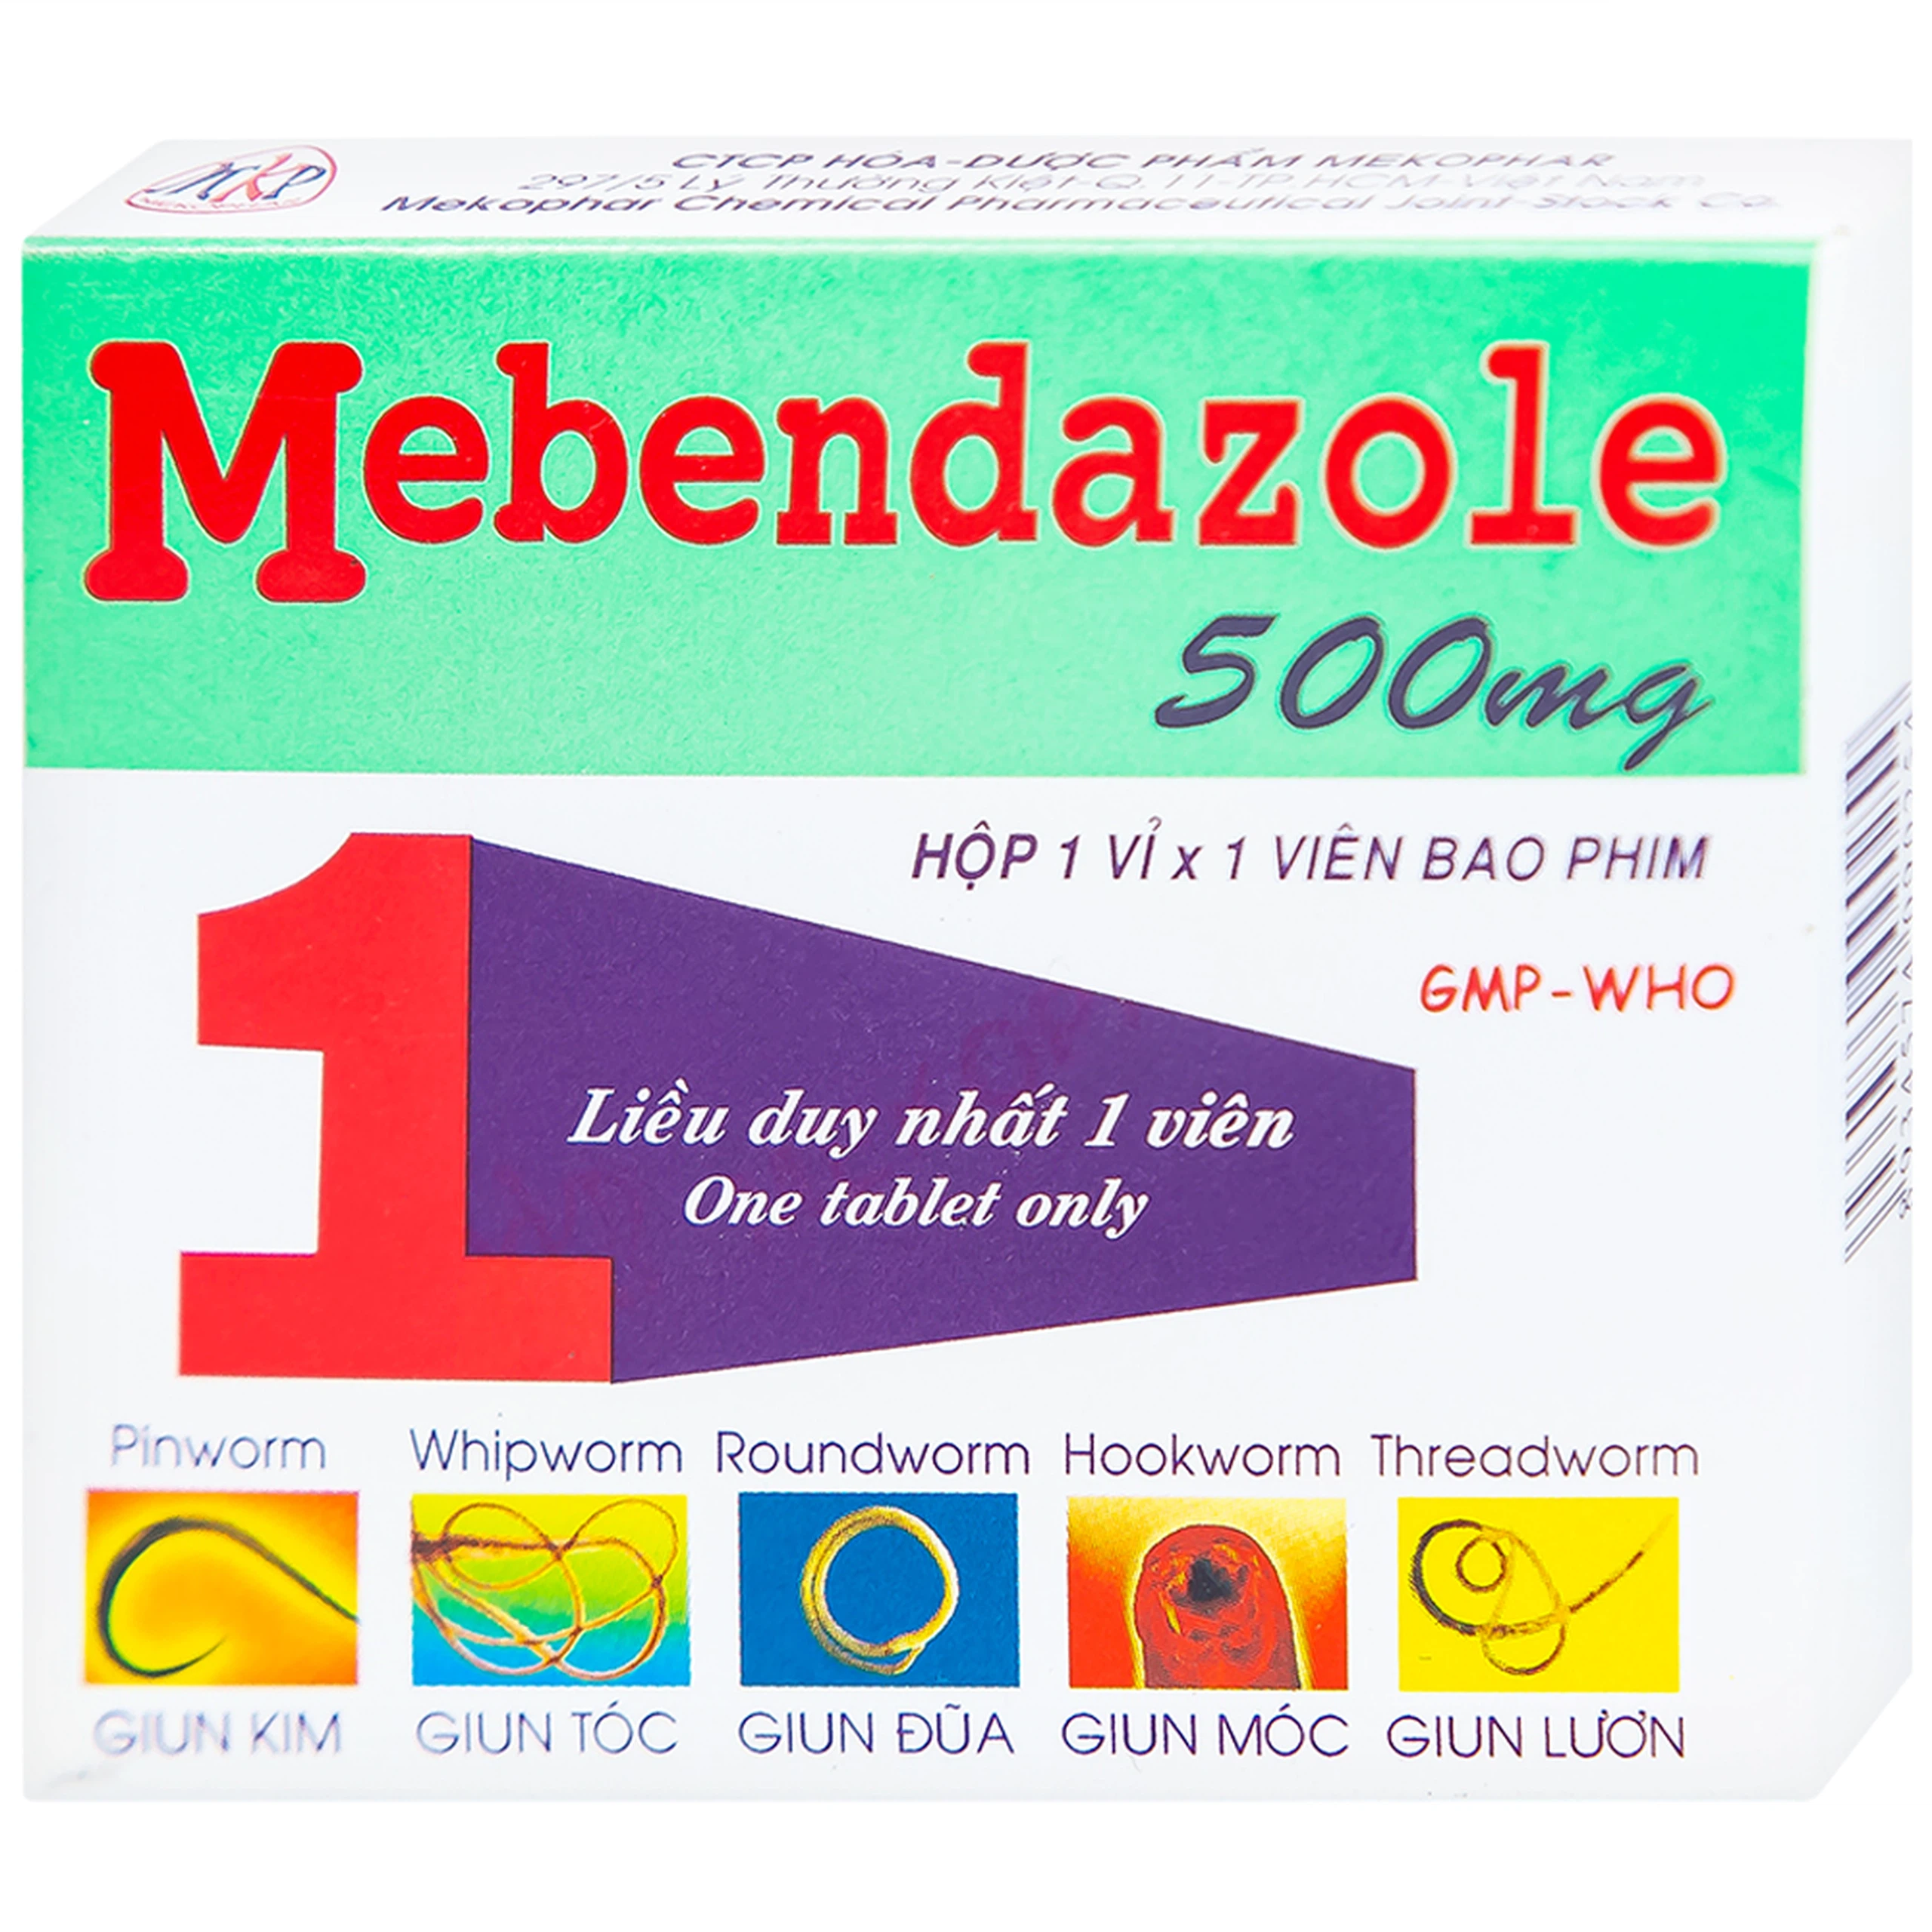 Viên nén Mebendazole 500mg Mekophar điều trị nhiễm một hay nhiều loại giun (1 viên)